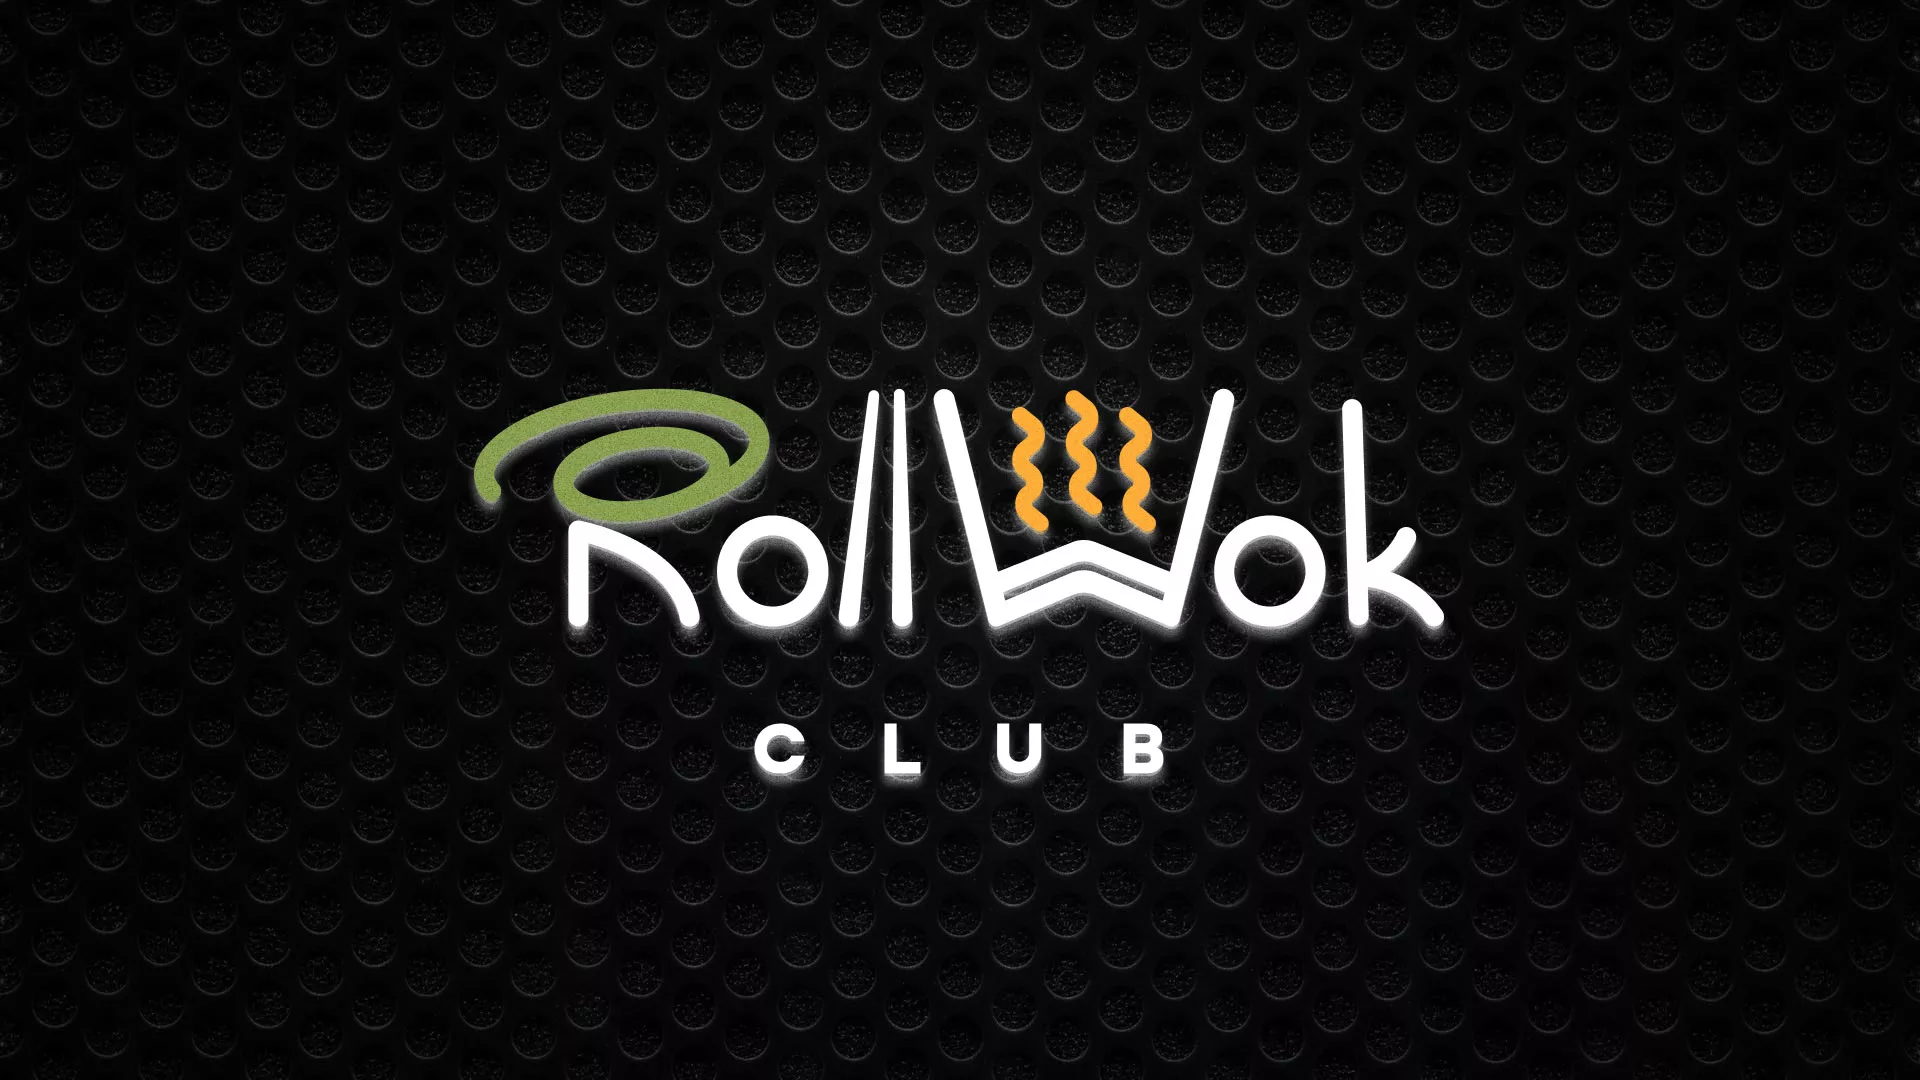 Брендирование торговых точек суши-бара «Roll Wok Club» в Хилоке